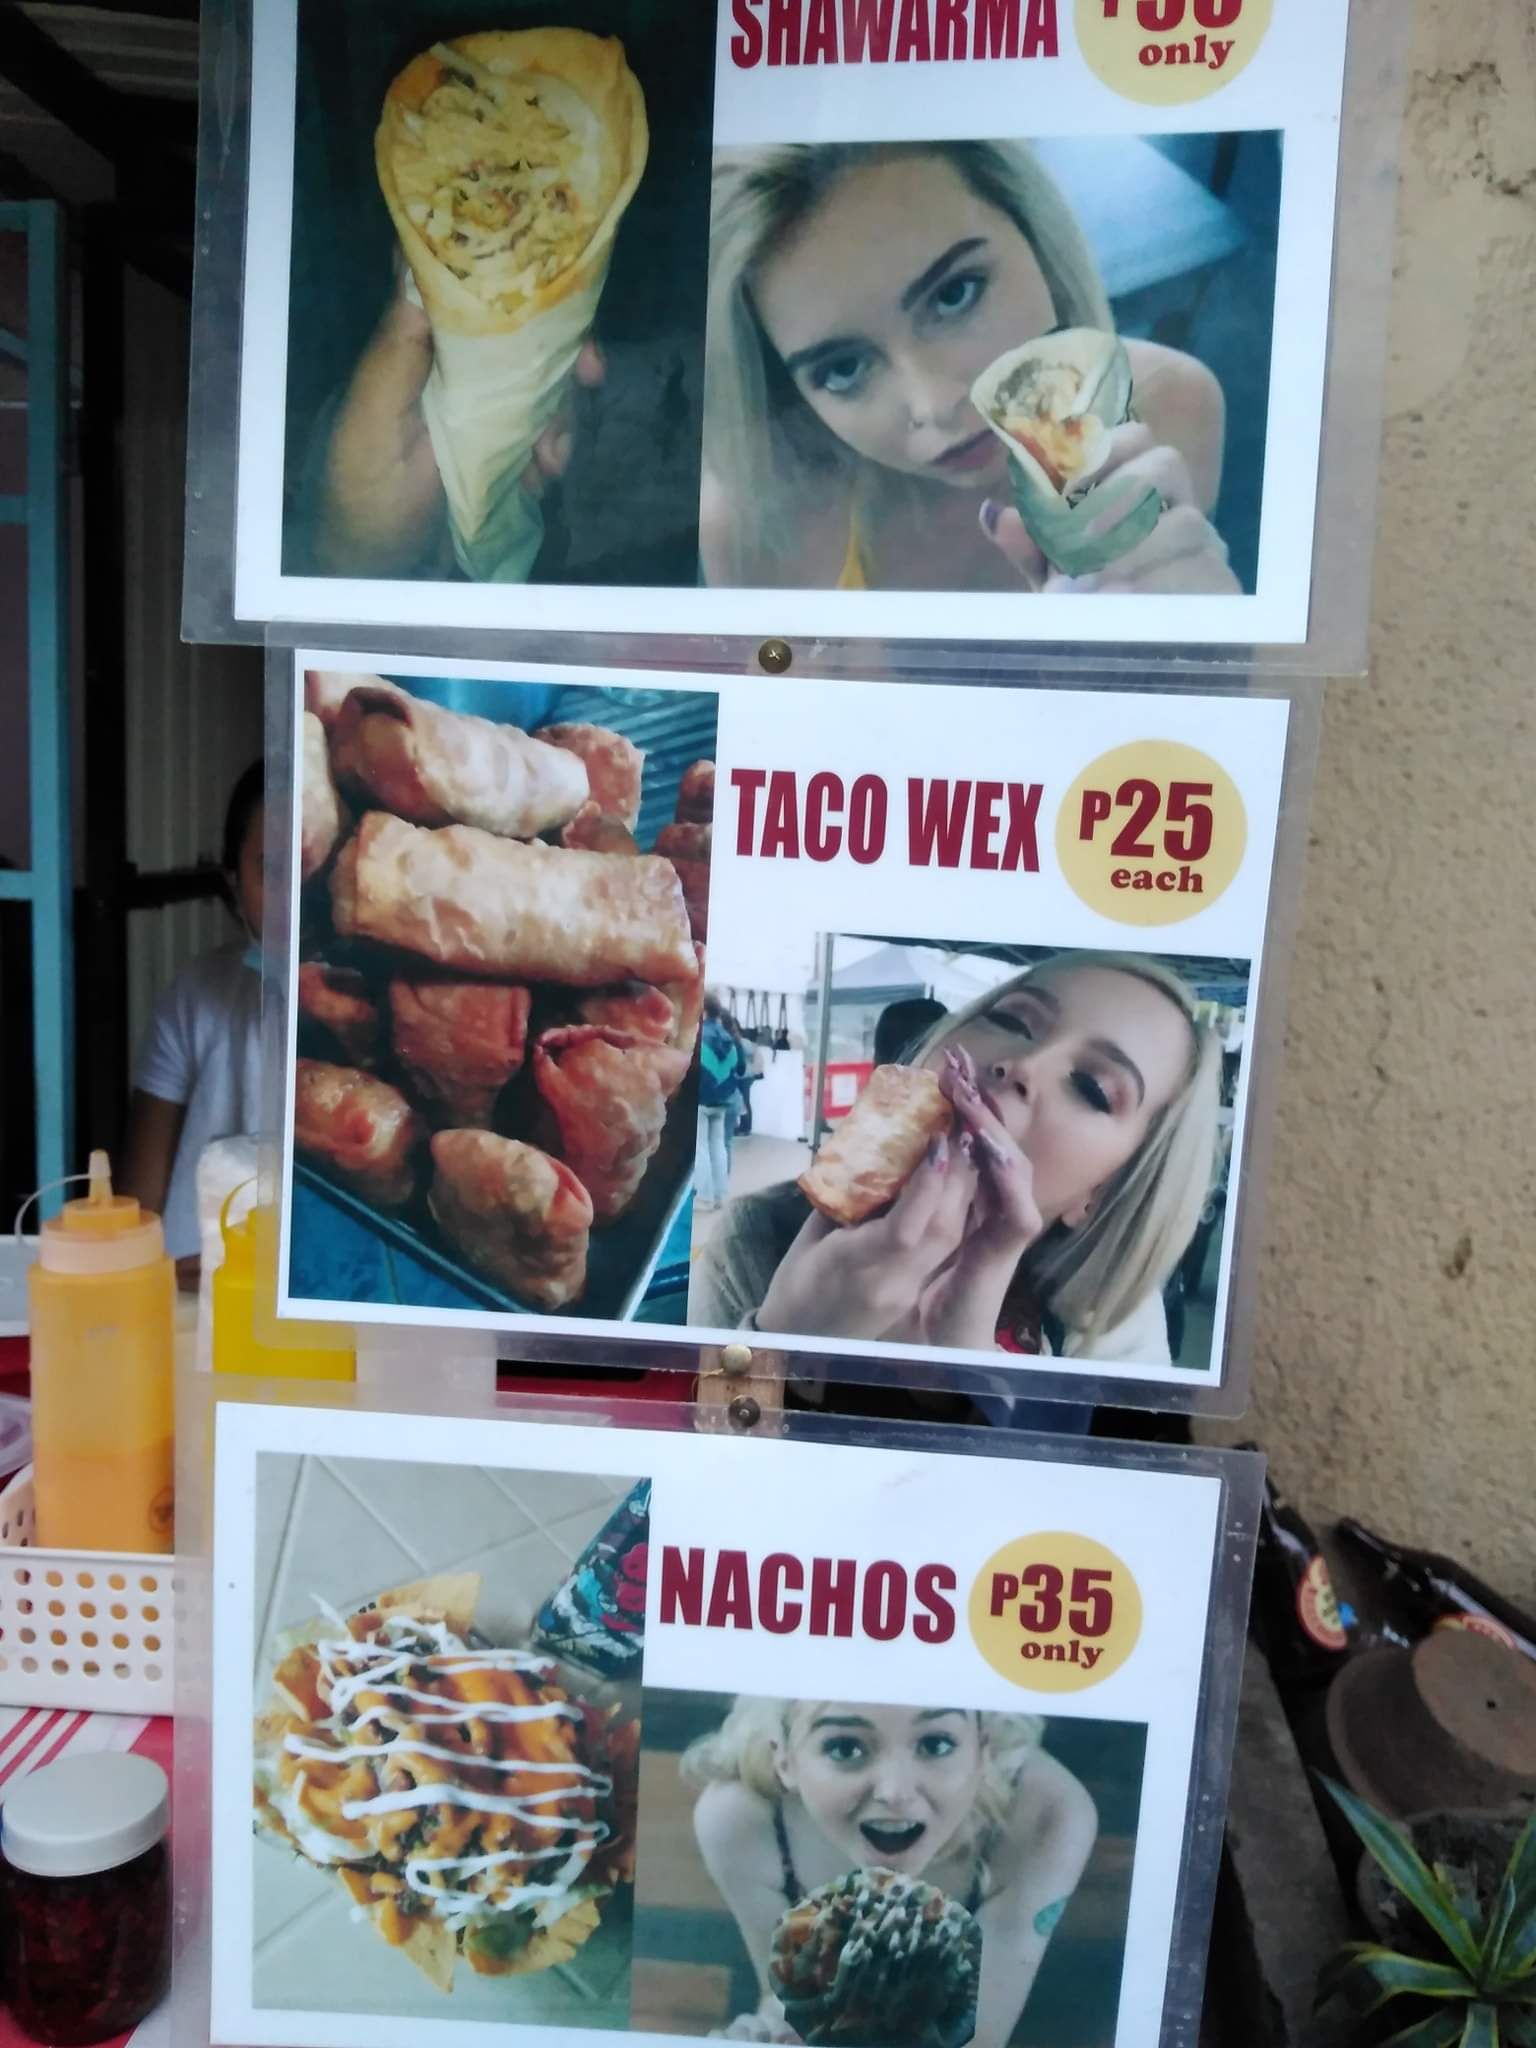 A Street-Food Vender Menu-Board in my Town